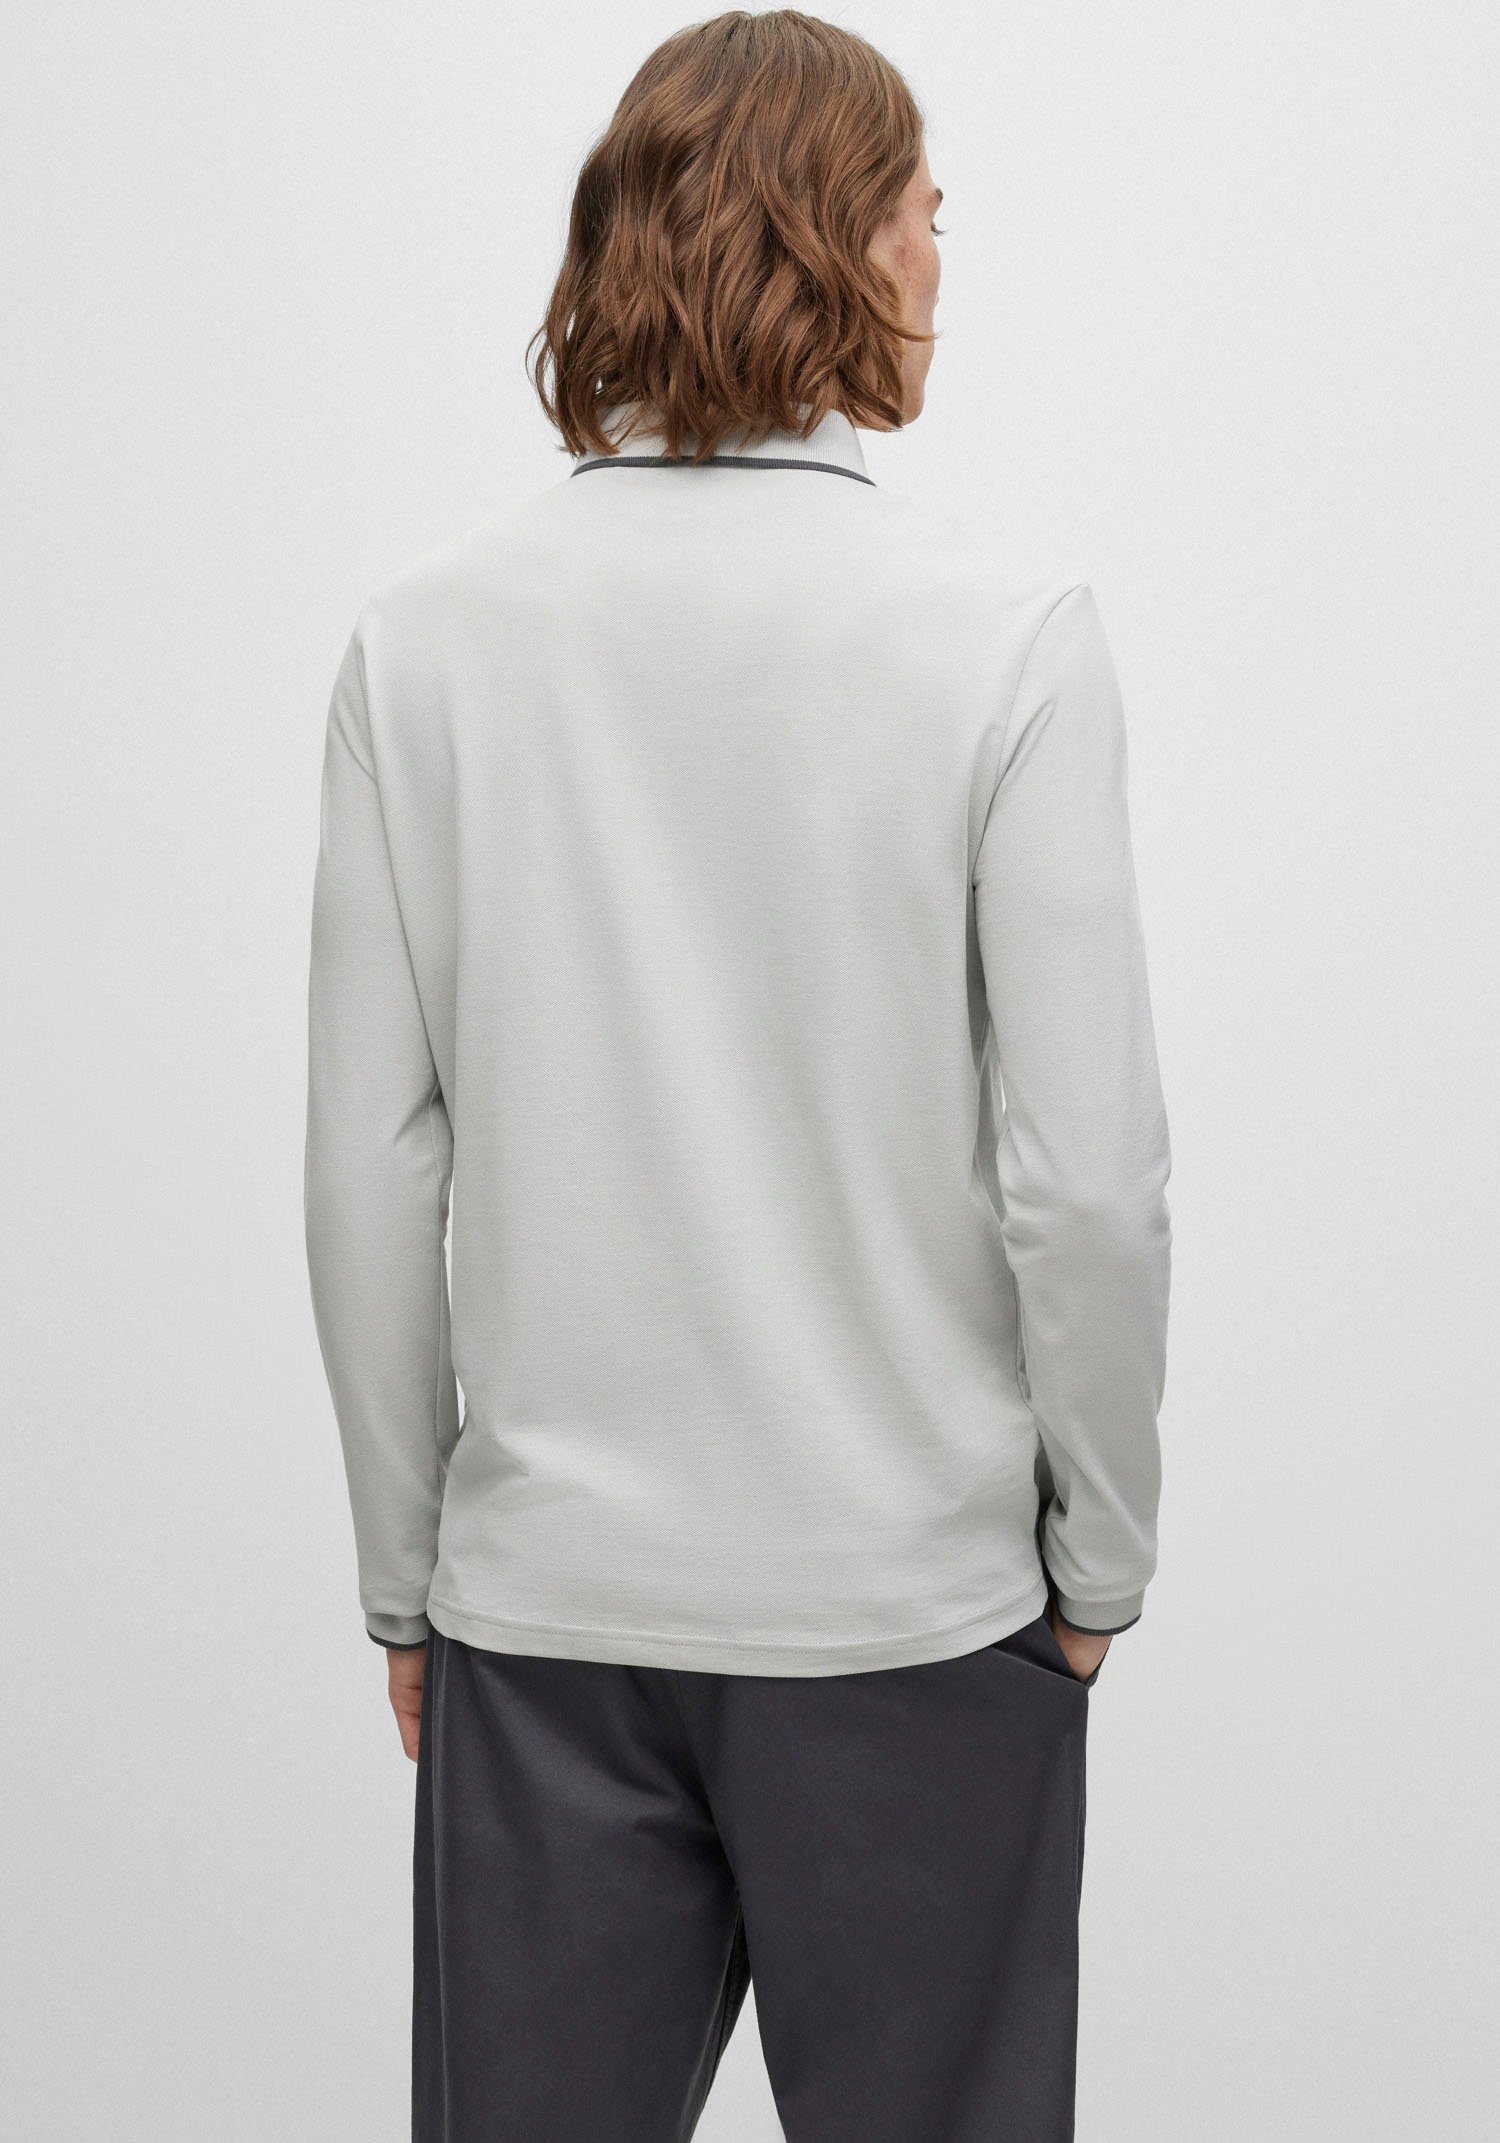 BOSS ORANGE Poloshirt Passertiplong in feiner Baumwollqualität, Aus softem,  elastischem Baumwoll-Piqué